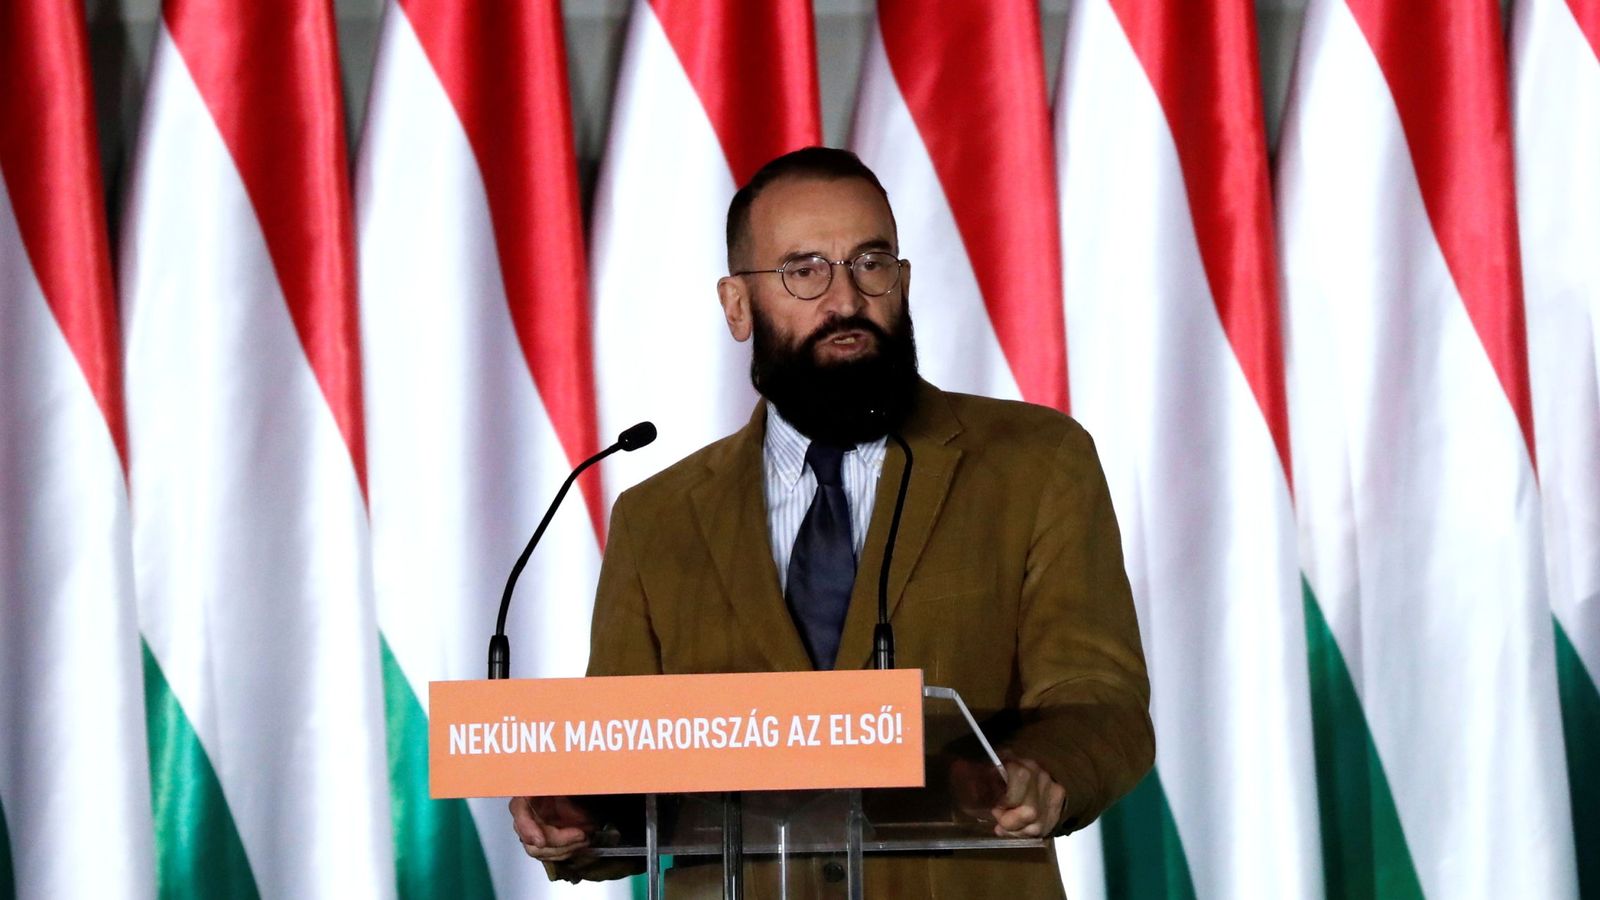 József Szájer, el miembro de Fidesz a quien pillaron en una orgía en Bruselas mientras estaban prohibidas las reuniones multitudinarias por la pandemia. (Reuters)